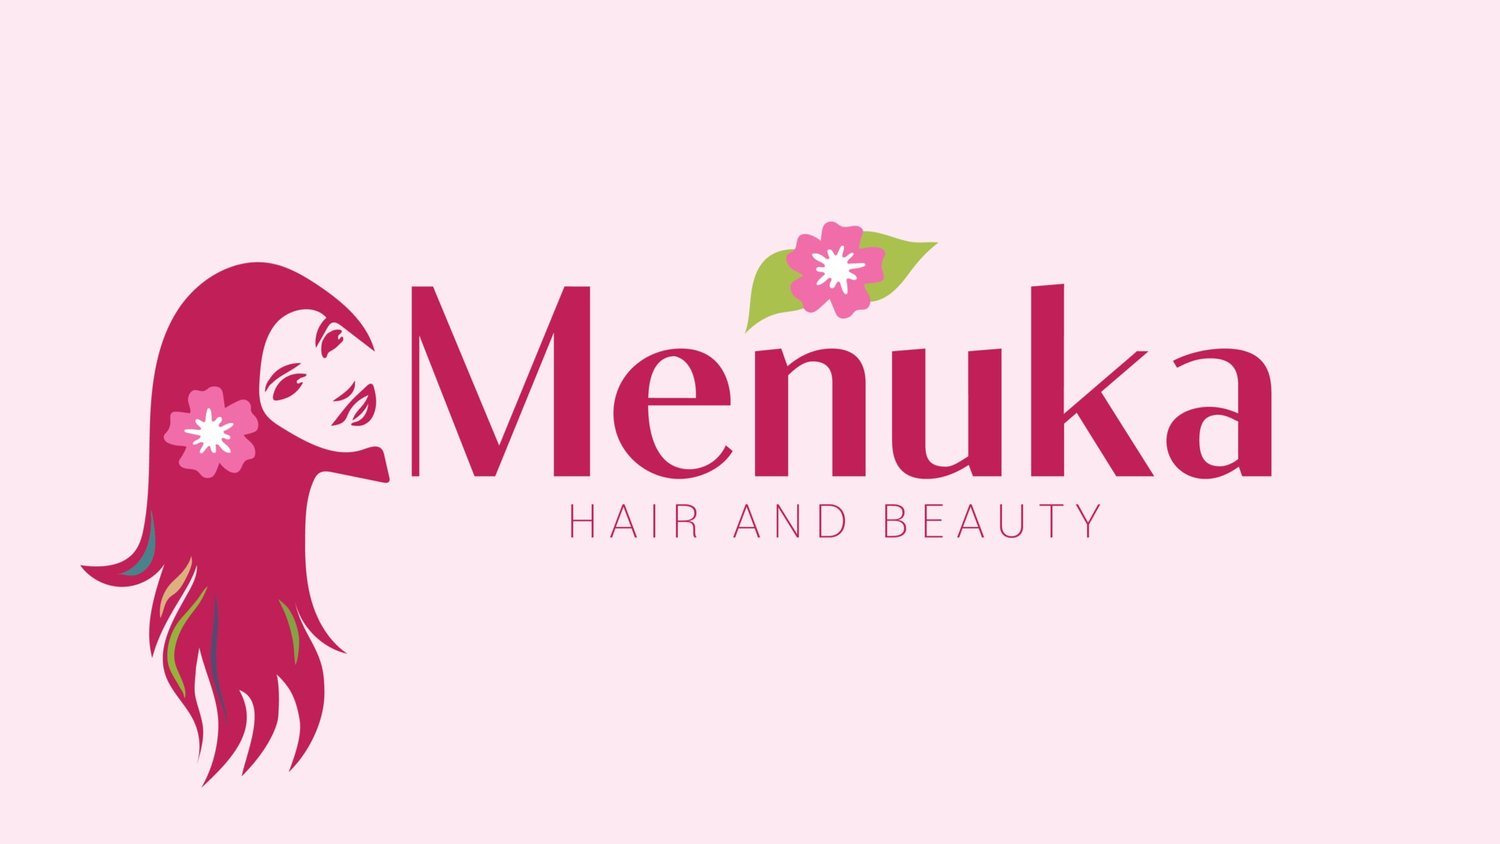 Meunka Hair and Beauty, Auckland